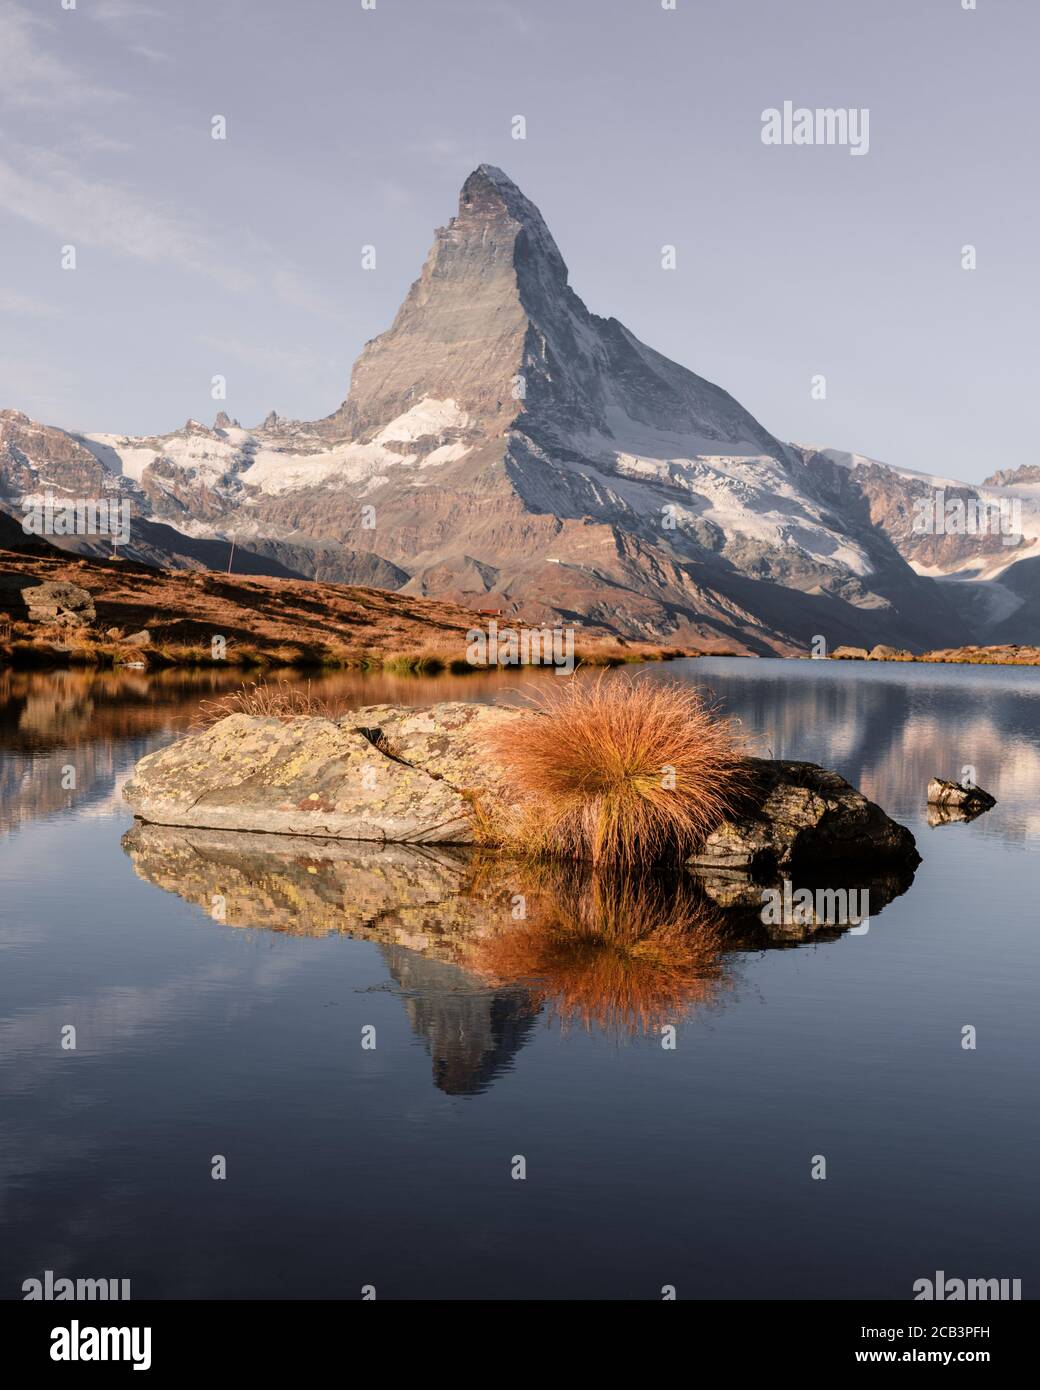 Malerische Landschaft mit bunten Sonnenaufgang am Stellisee See. Snowy Matterhorn Matterhorn Gipfel mit Reflexion in klares Wasser. Zermatt, Schweizer Alpen Stockfoto